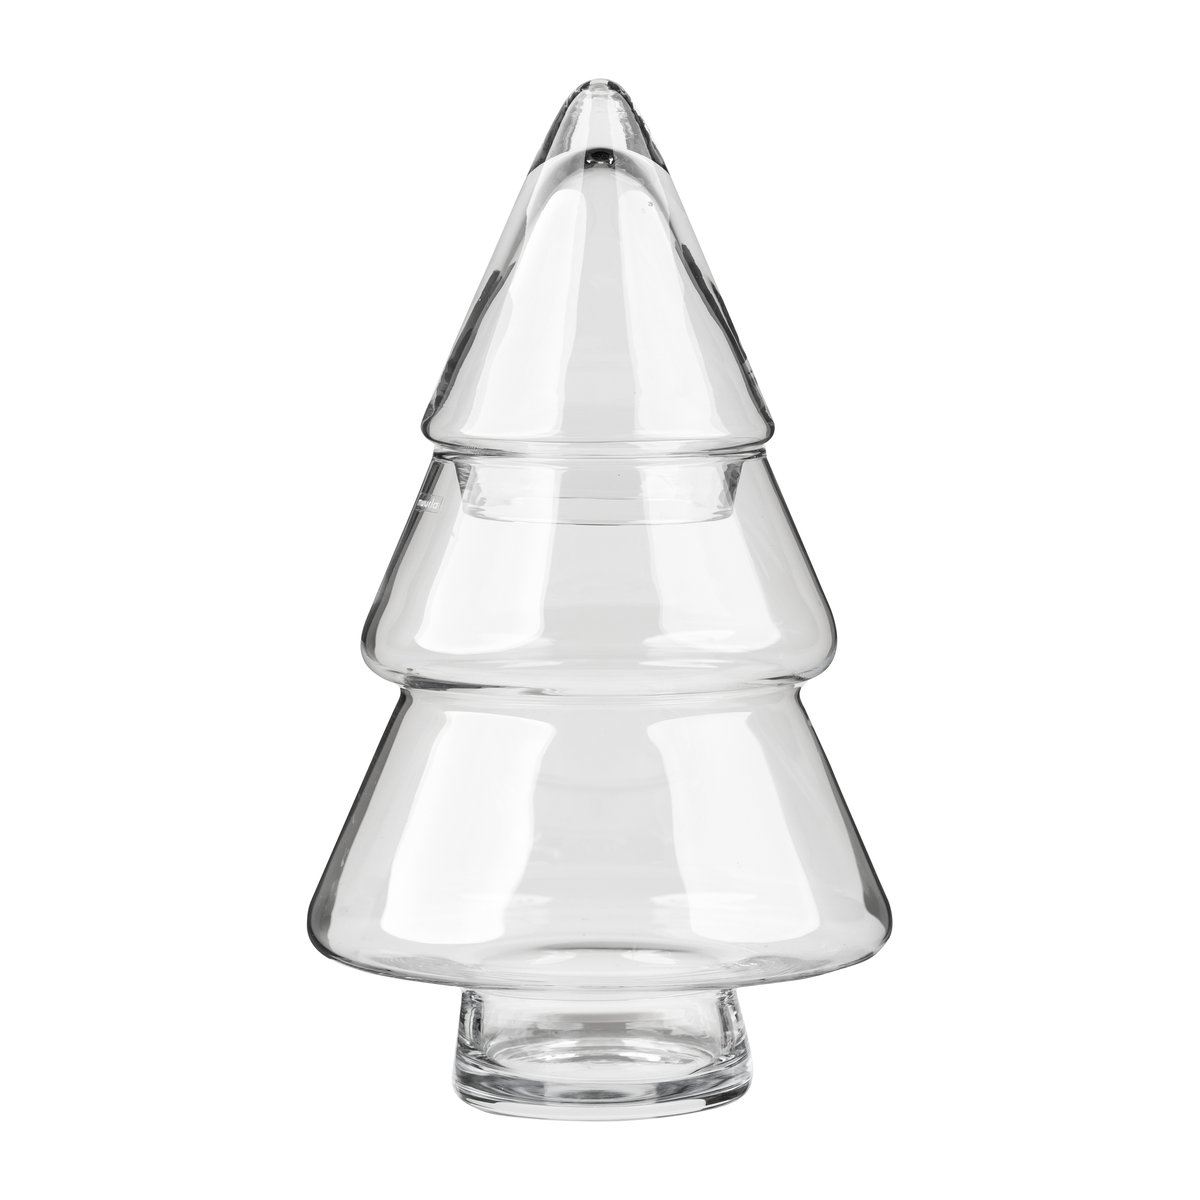 Muurla Glass tree lasipurkki kannellinen 30 cm Kirkas